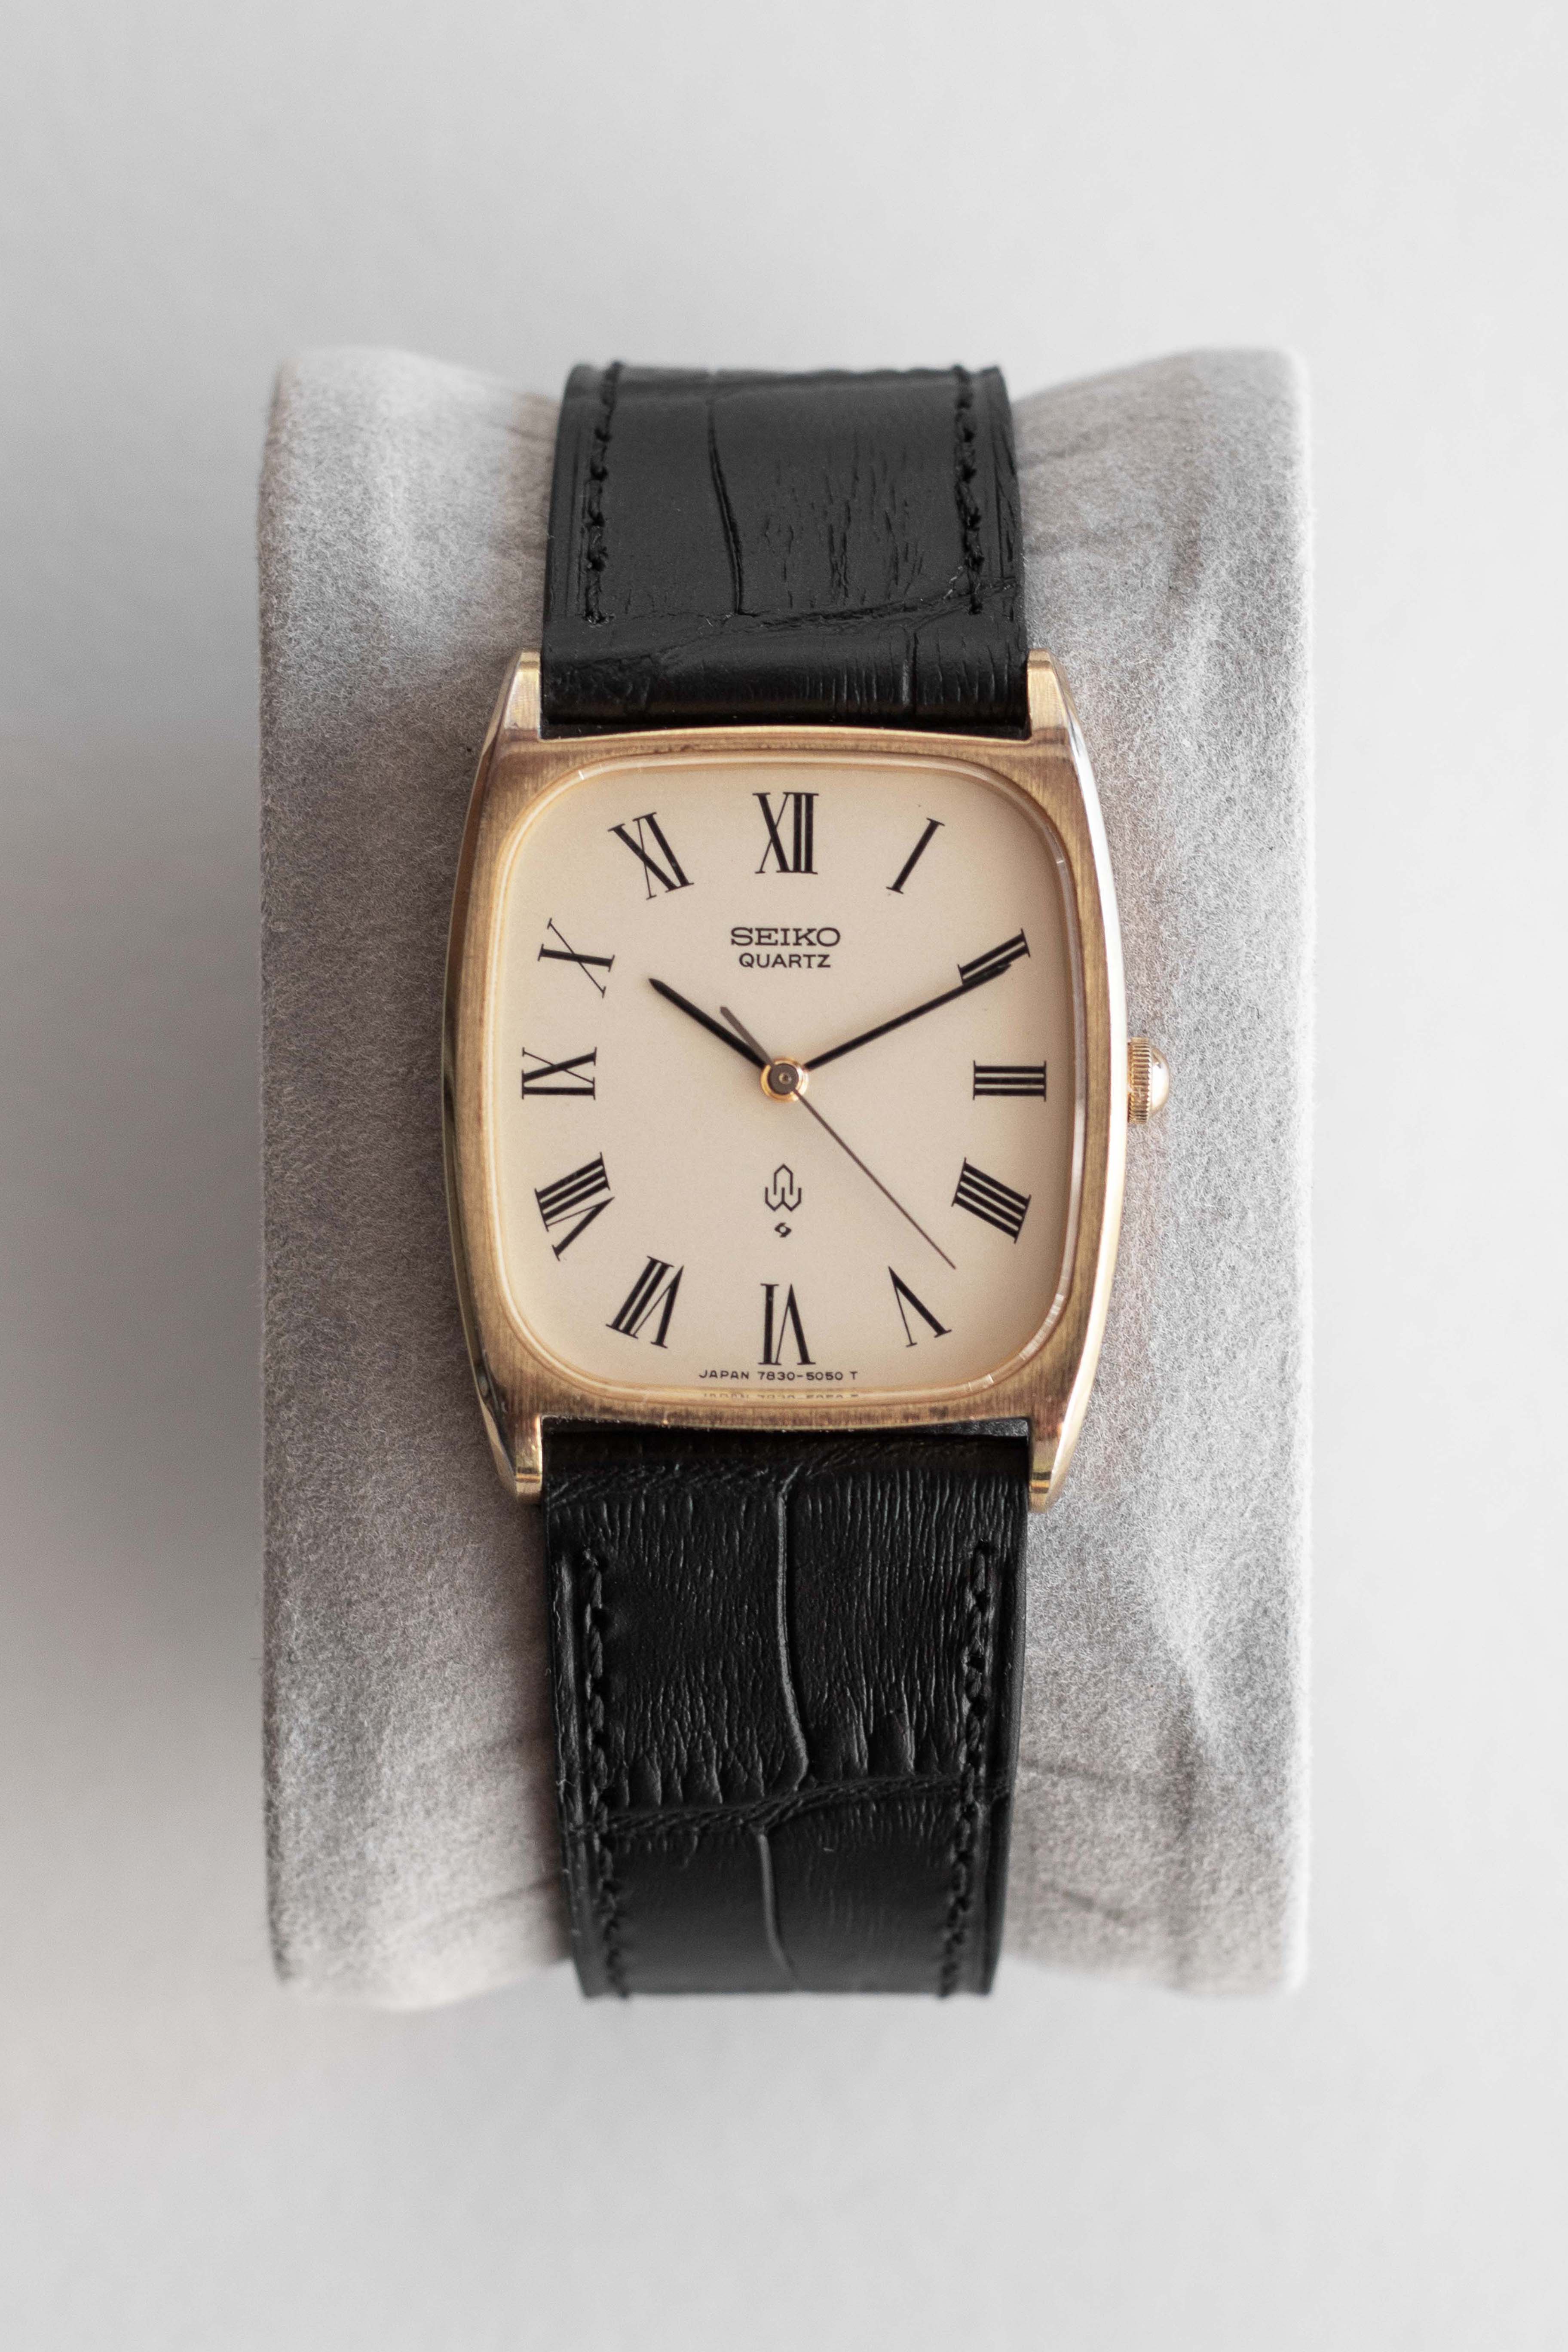 Afslachten Onderzoek Vlak Seiko Quartz Tank Ref. 7830-5040 1978 | Vintage & Pre-Owned Luxury Watches  – Wynn & Thayne